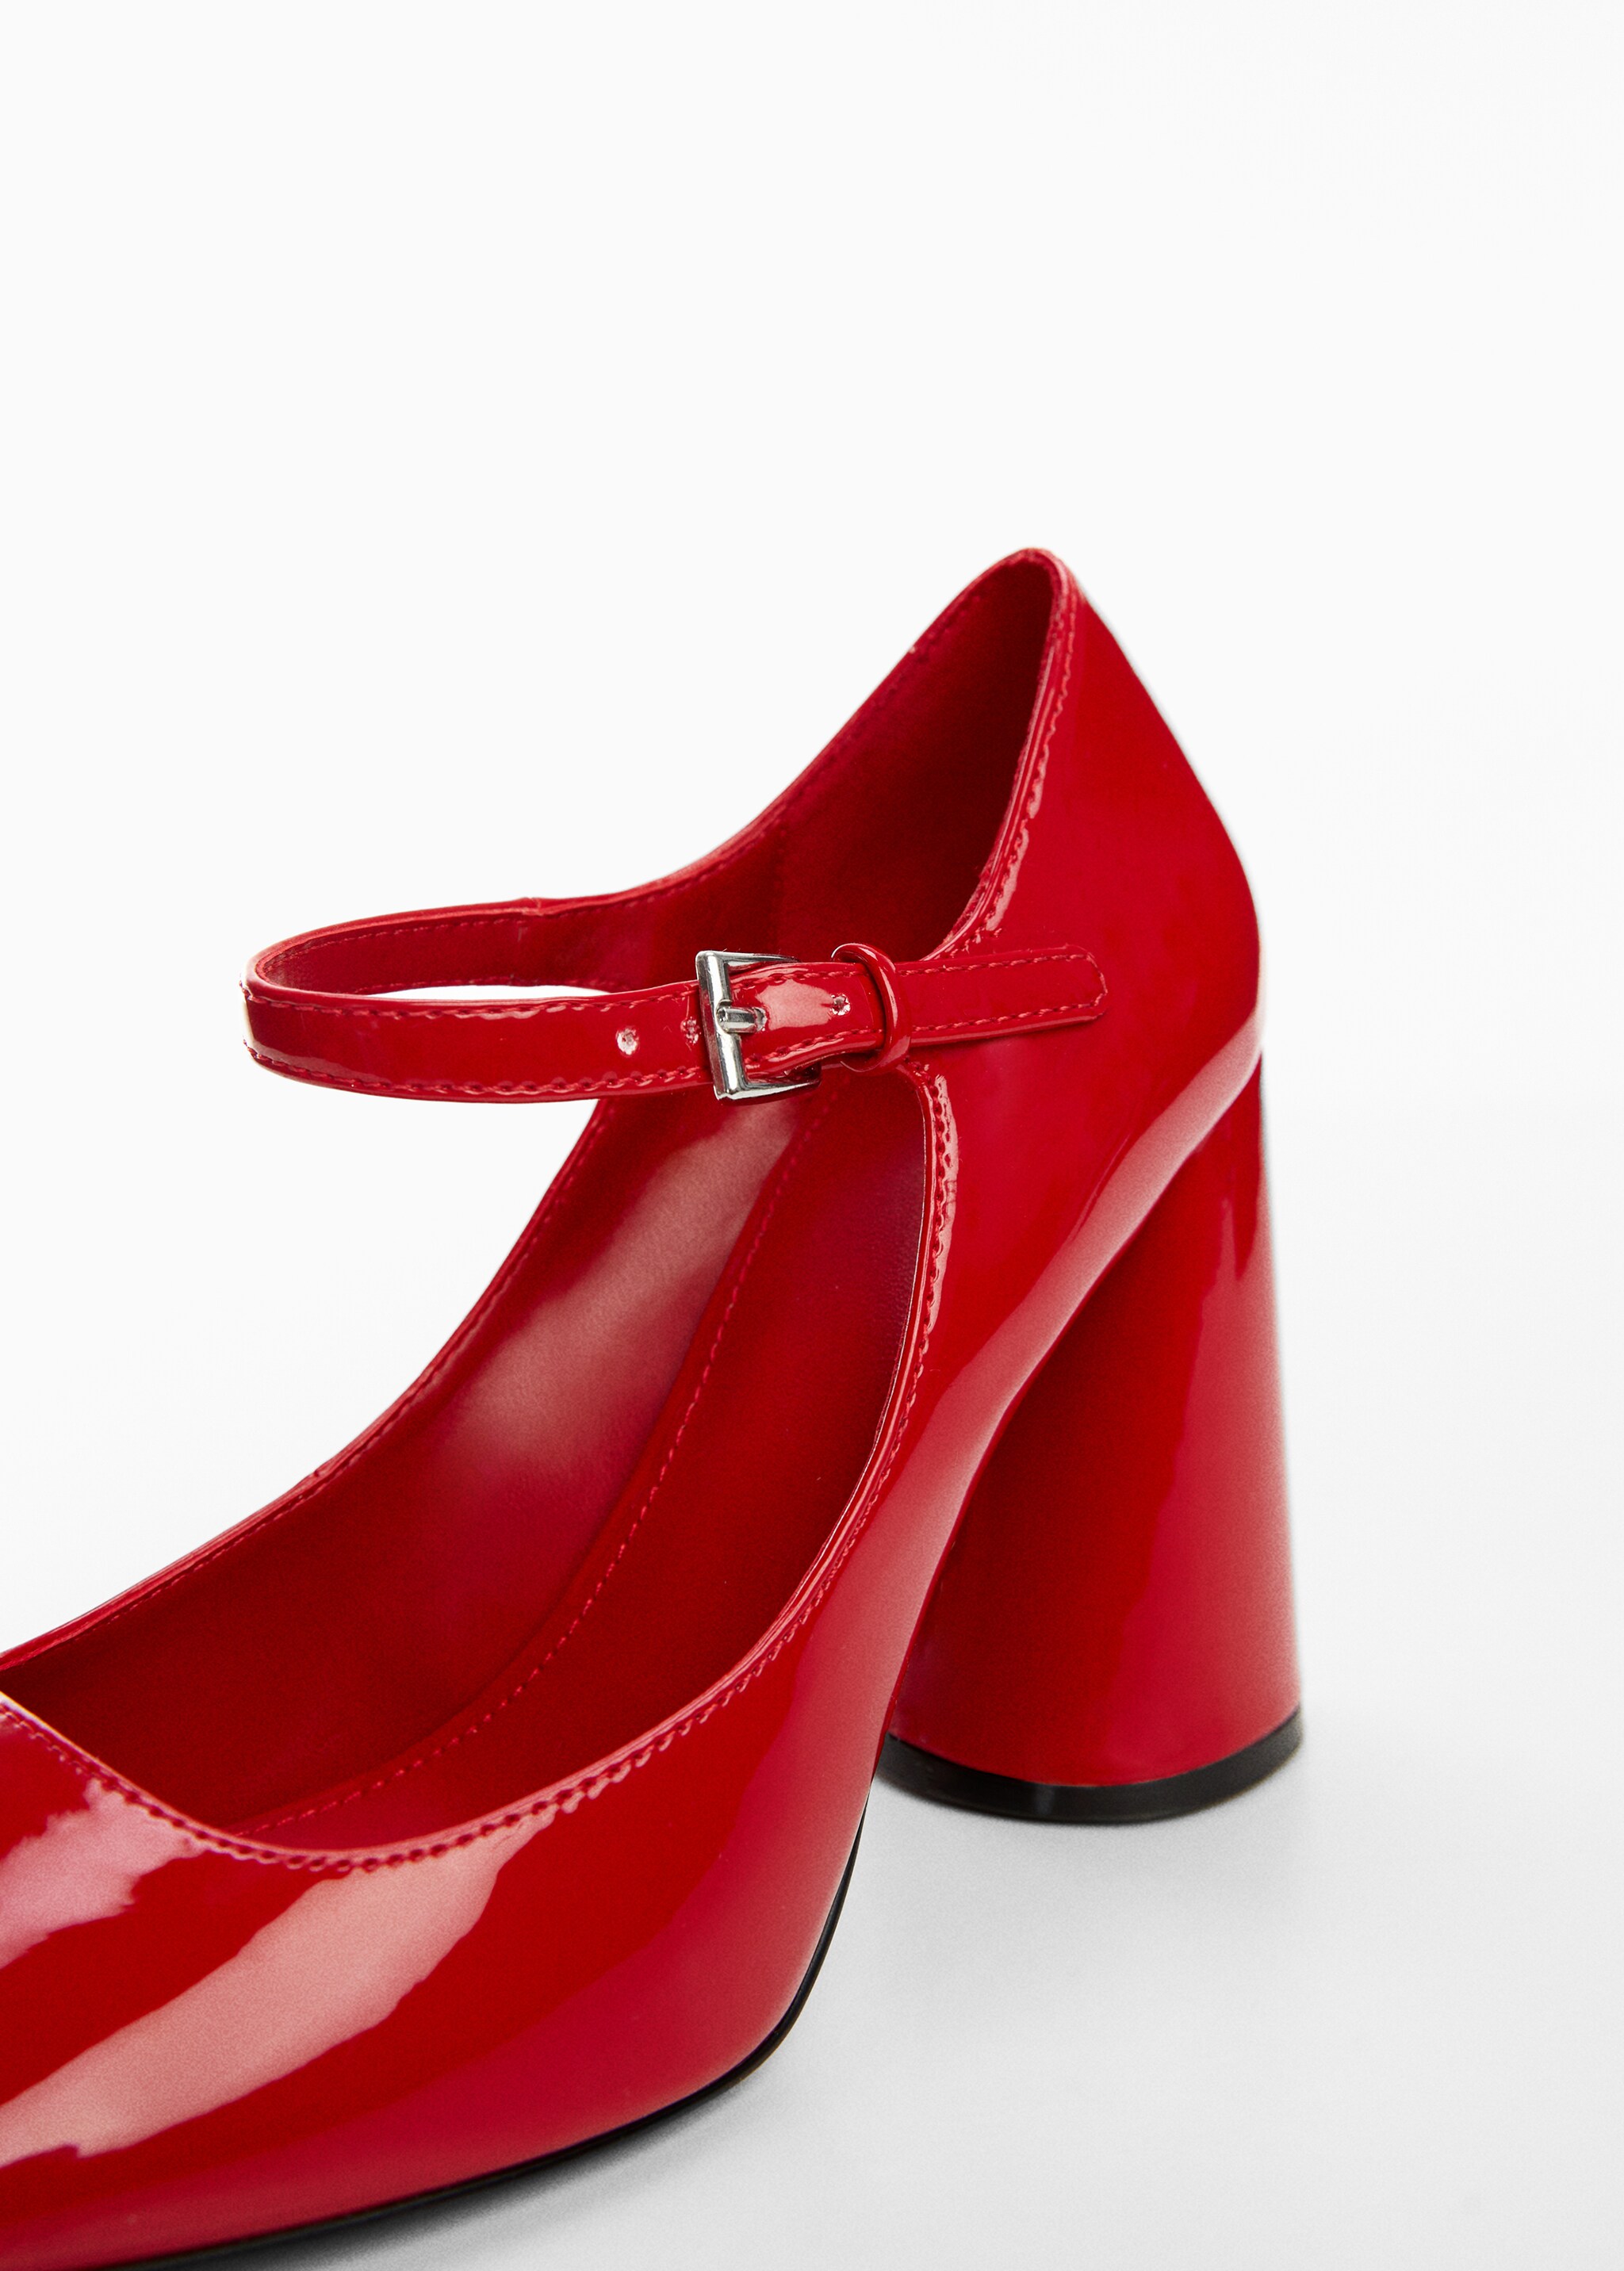 Patent leather heel shoes - Detaliu al articolului 2